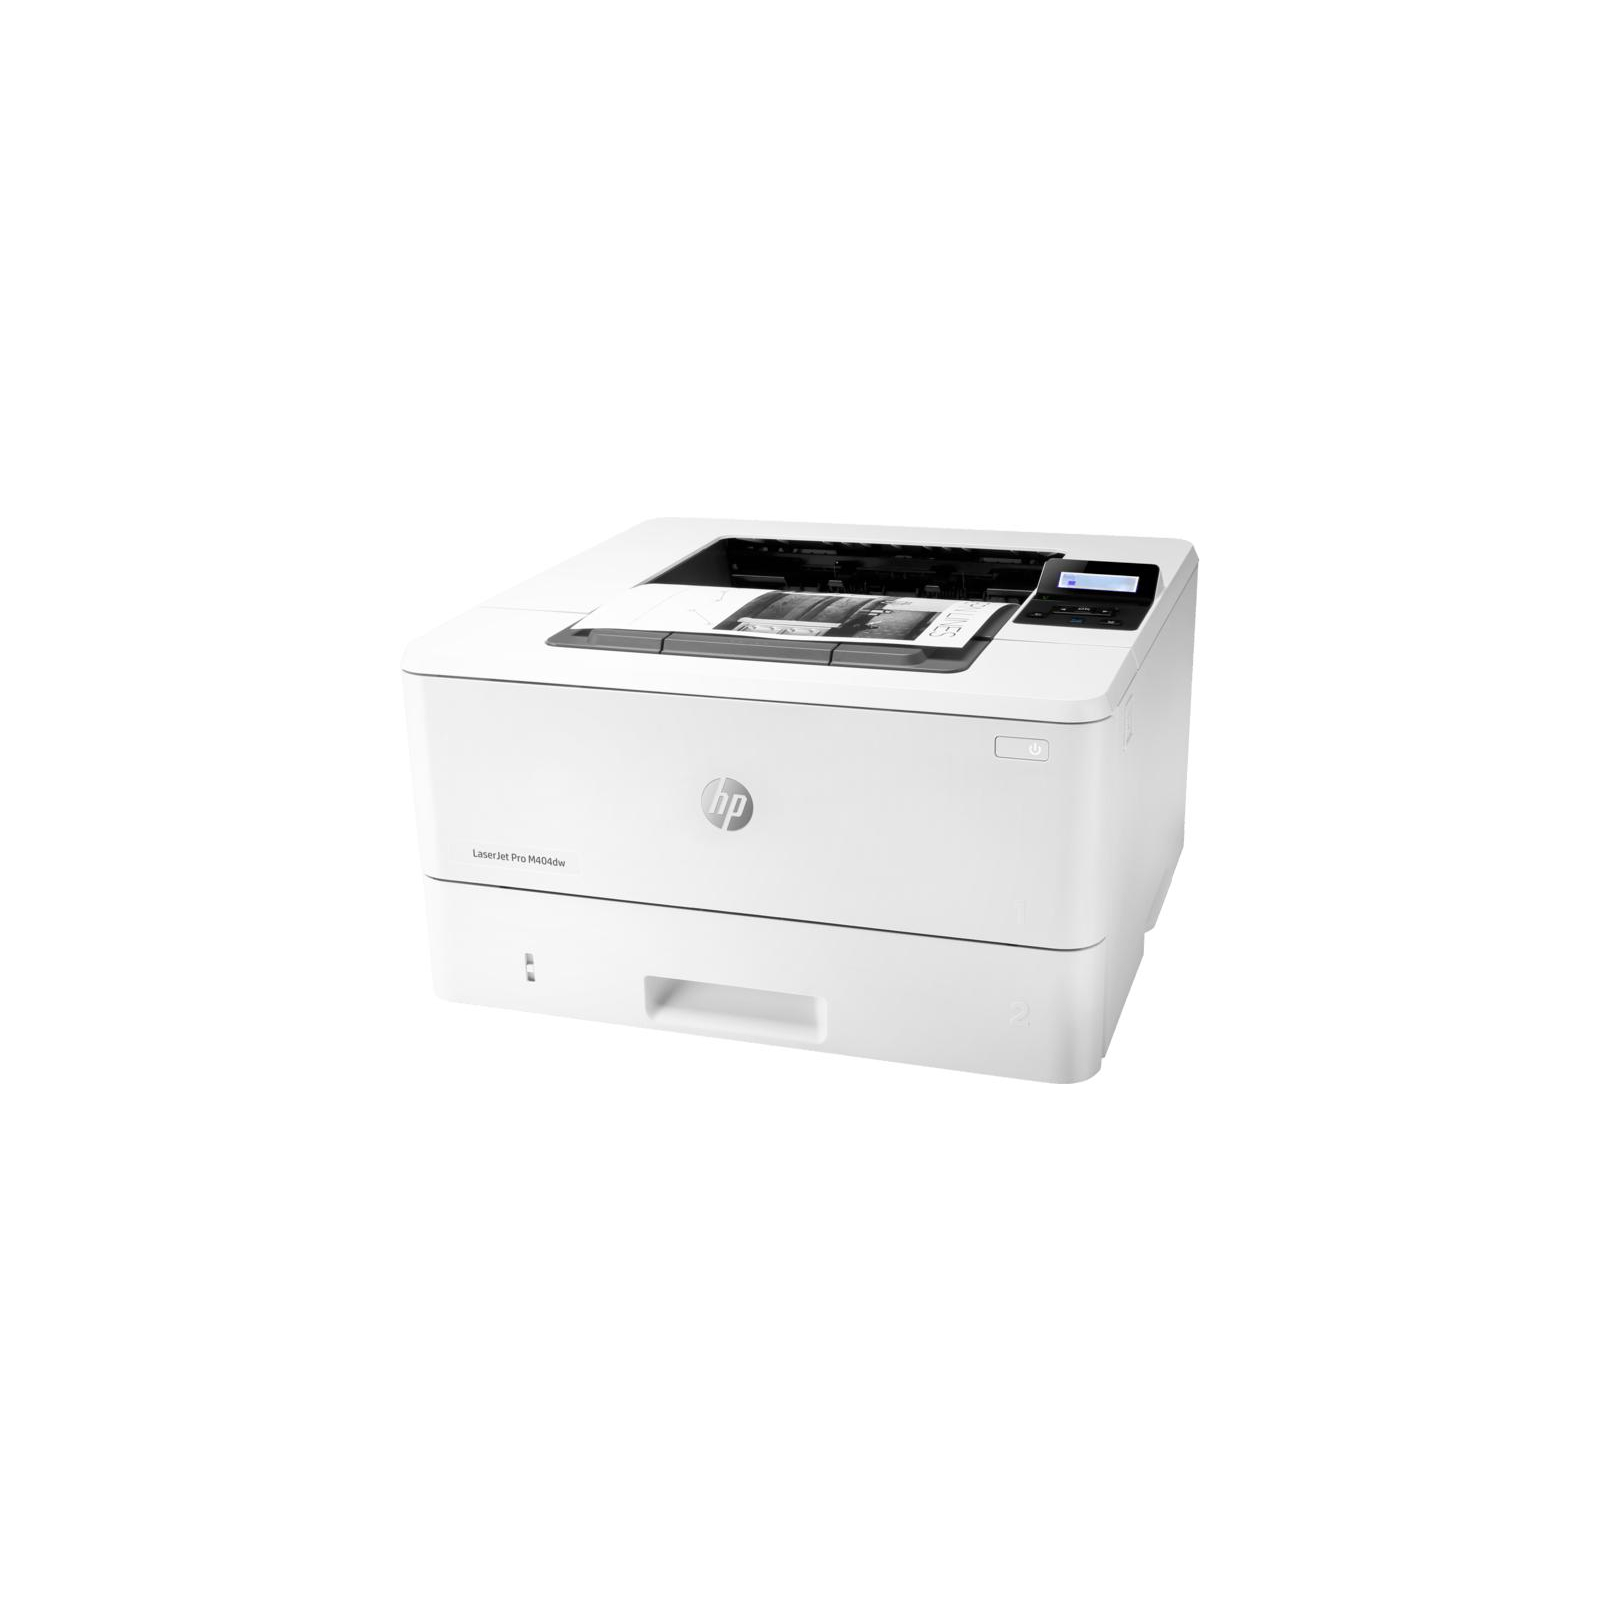 Лазерный принтер HP LaserJet Pro M404dw c Wi-Fi (W1A56A) изображение 3